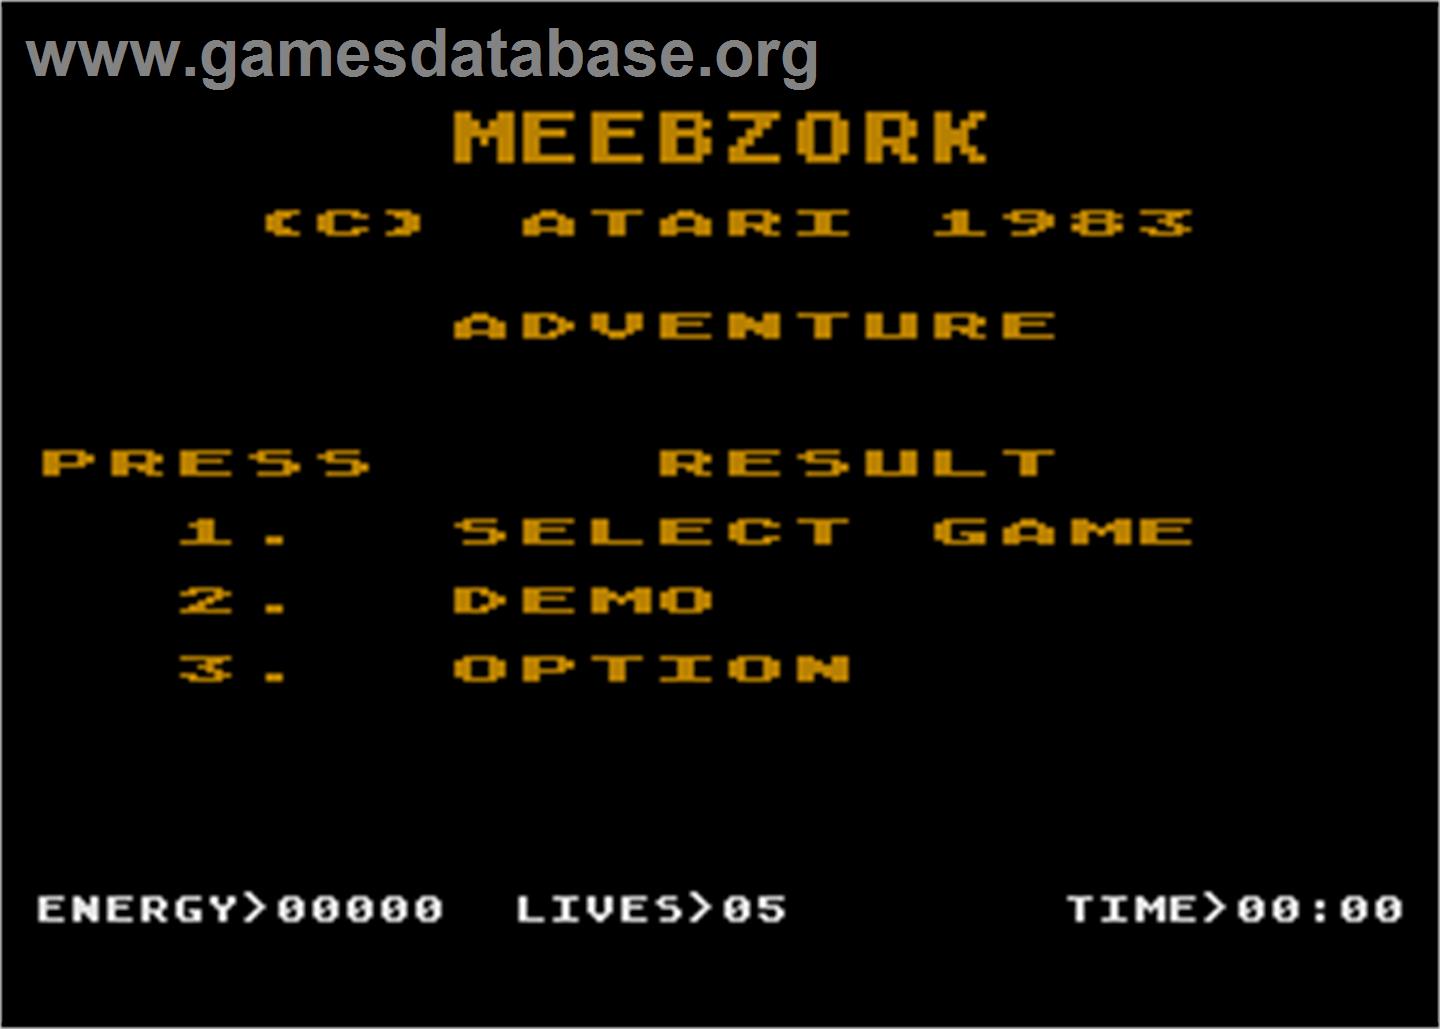 Meebzork - Atari 5200 - Artwork - Title Screen